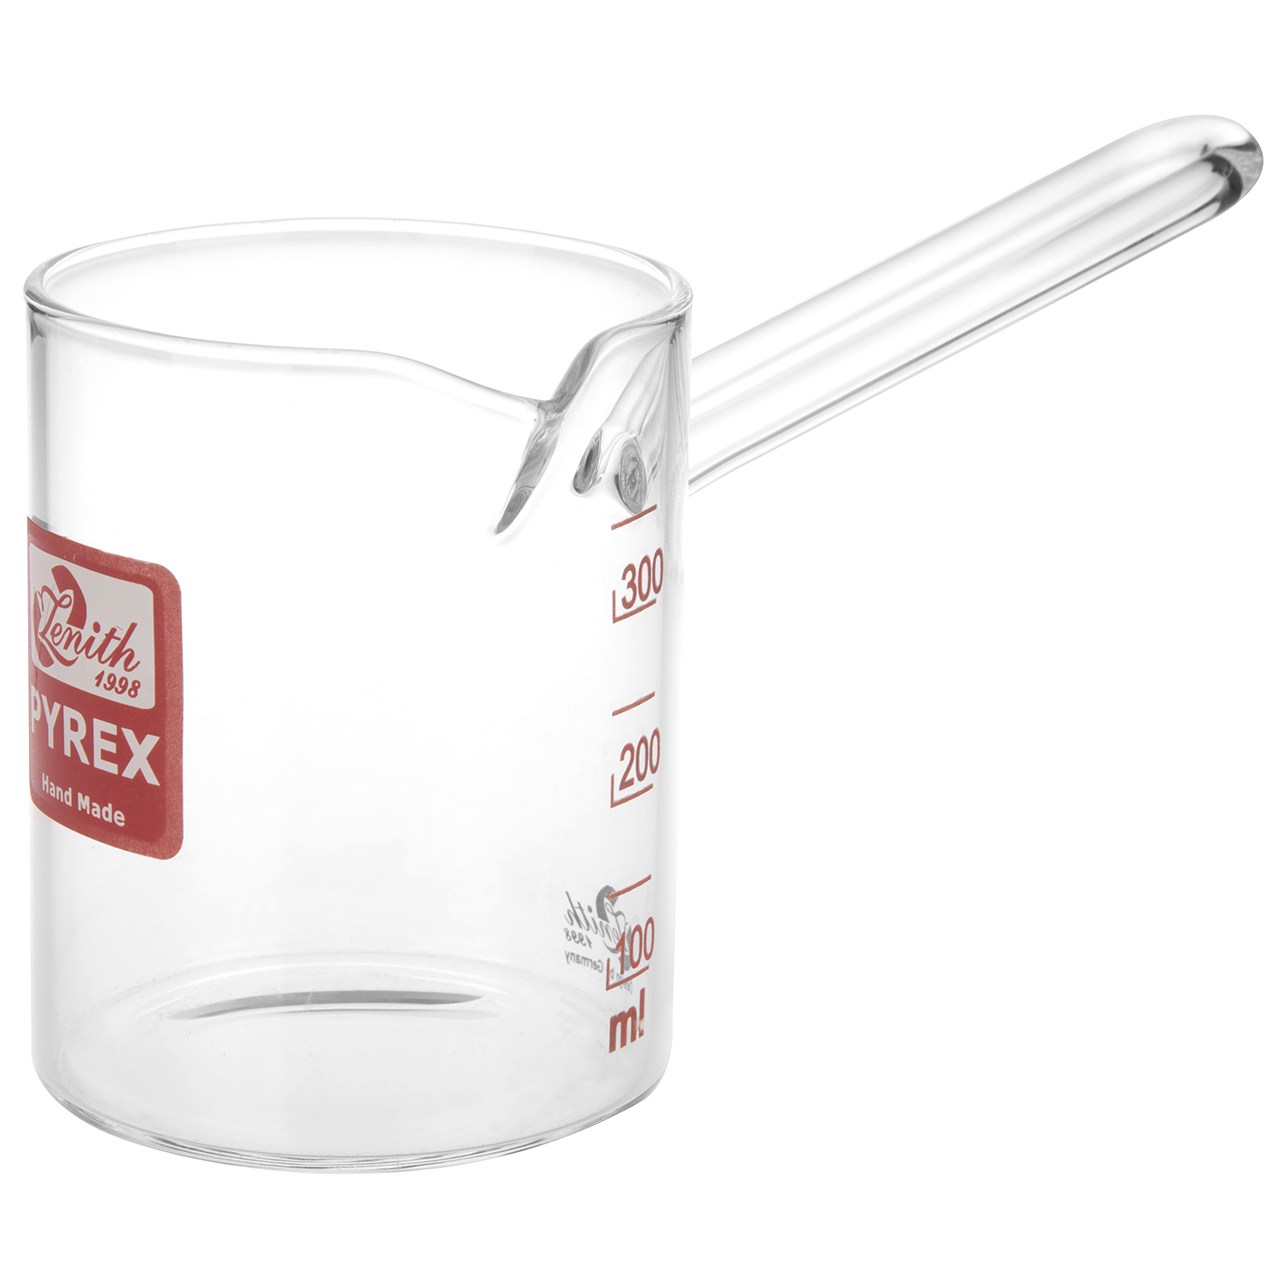 شیر جوش شیشه ای زنیت مدل Pyrex